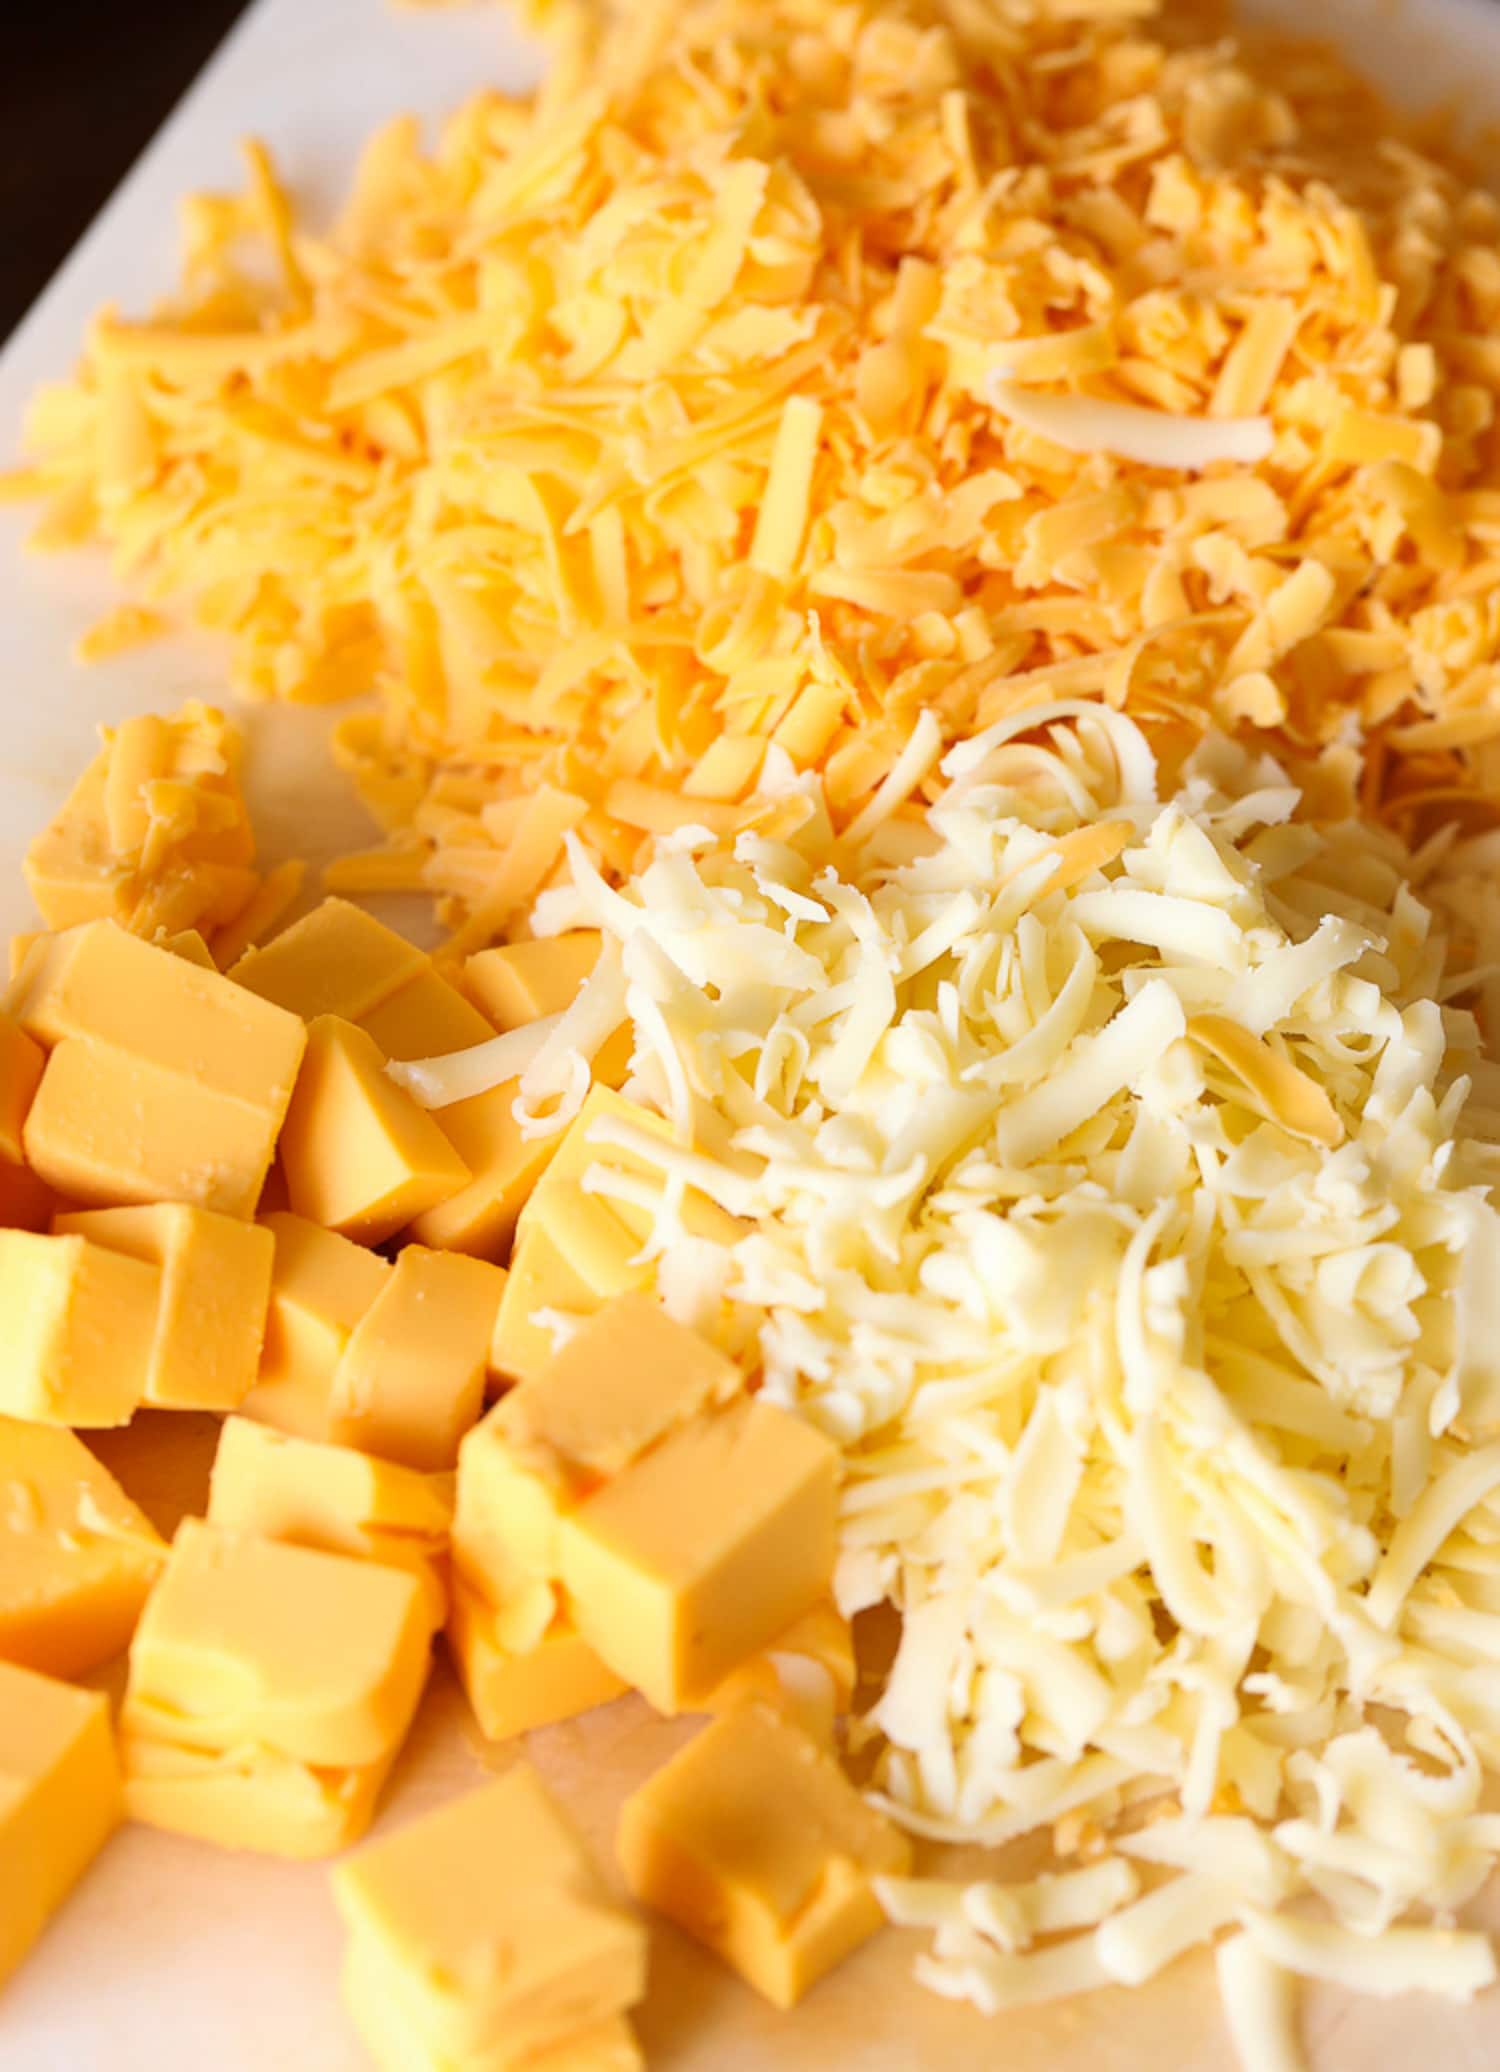 ثلاثة أنواع من الجبن المبشور على لوح تقطيع